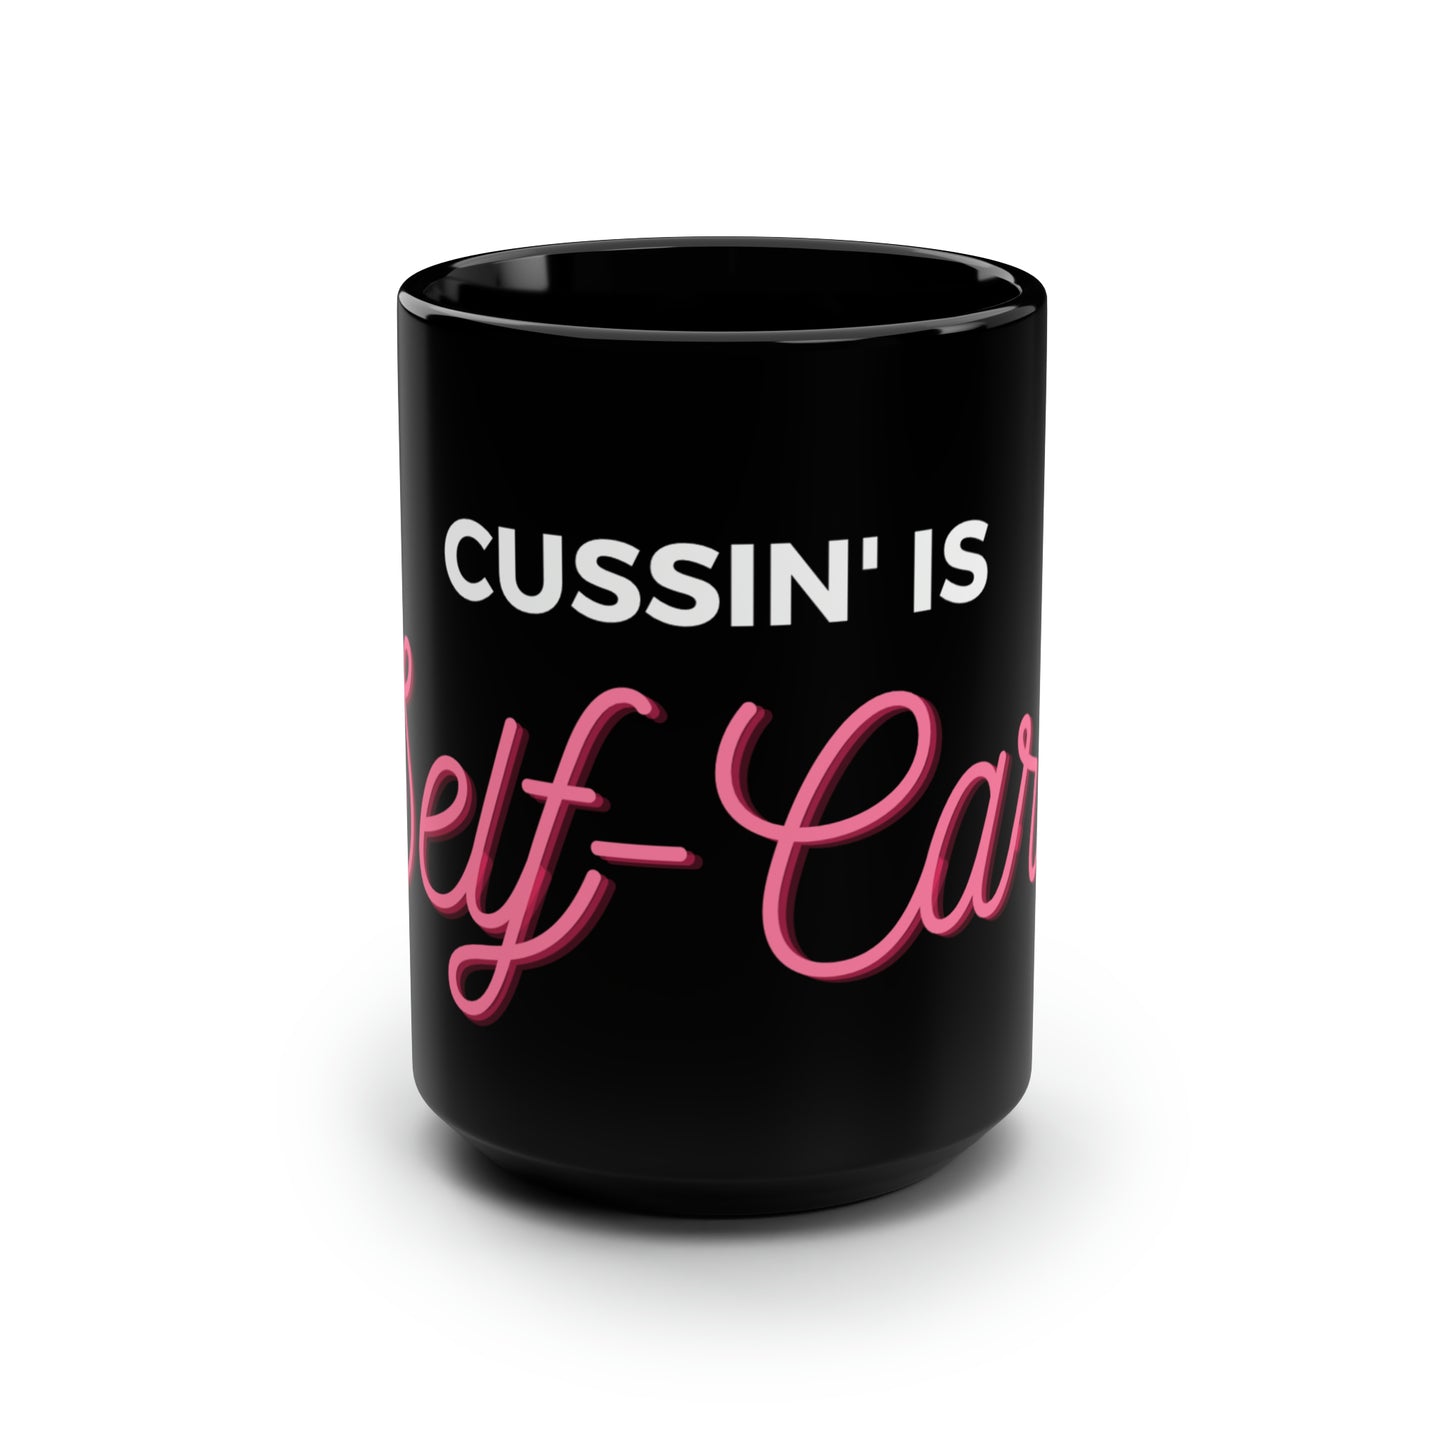 Cussin' is Self-Care - Black Mug, 15oz